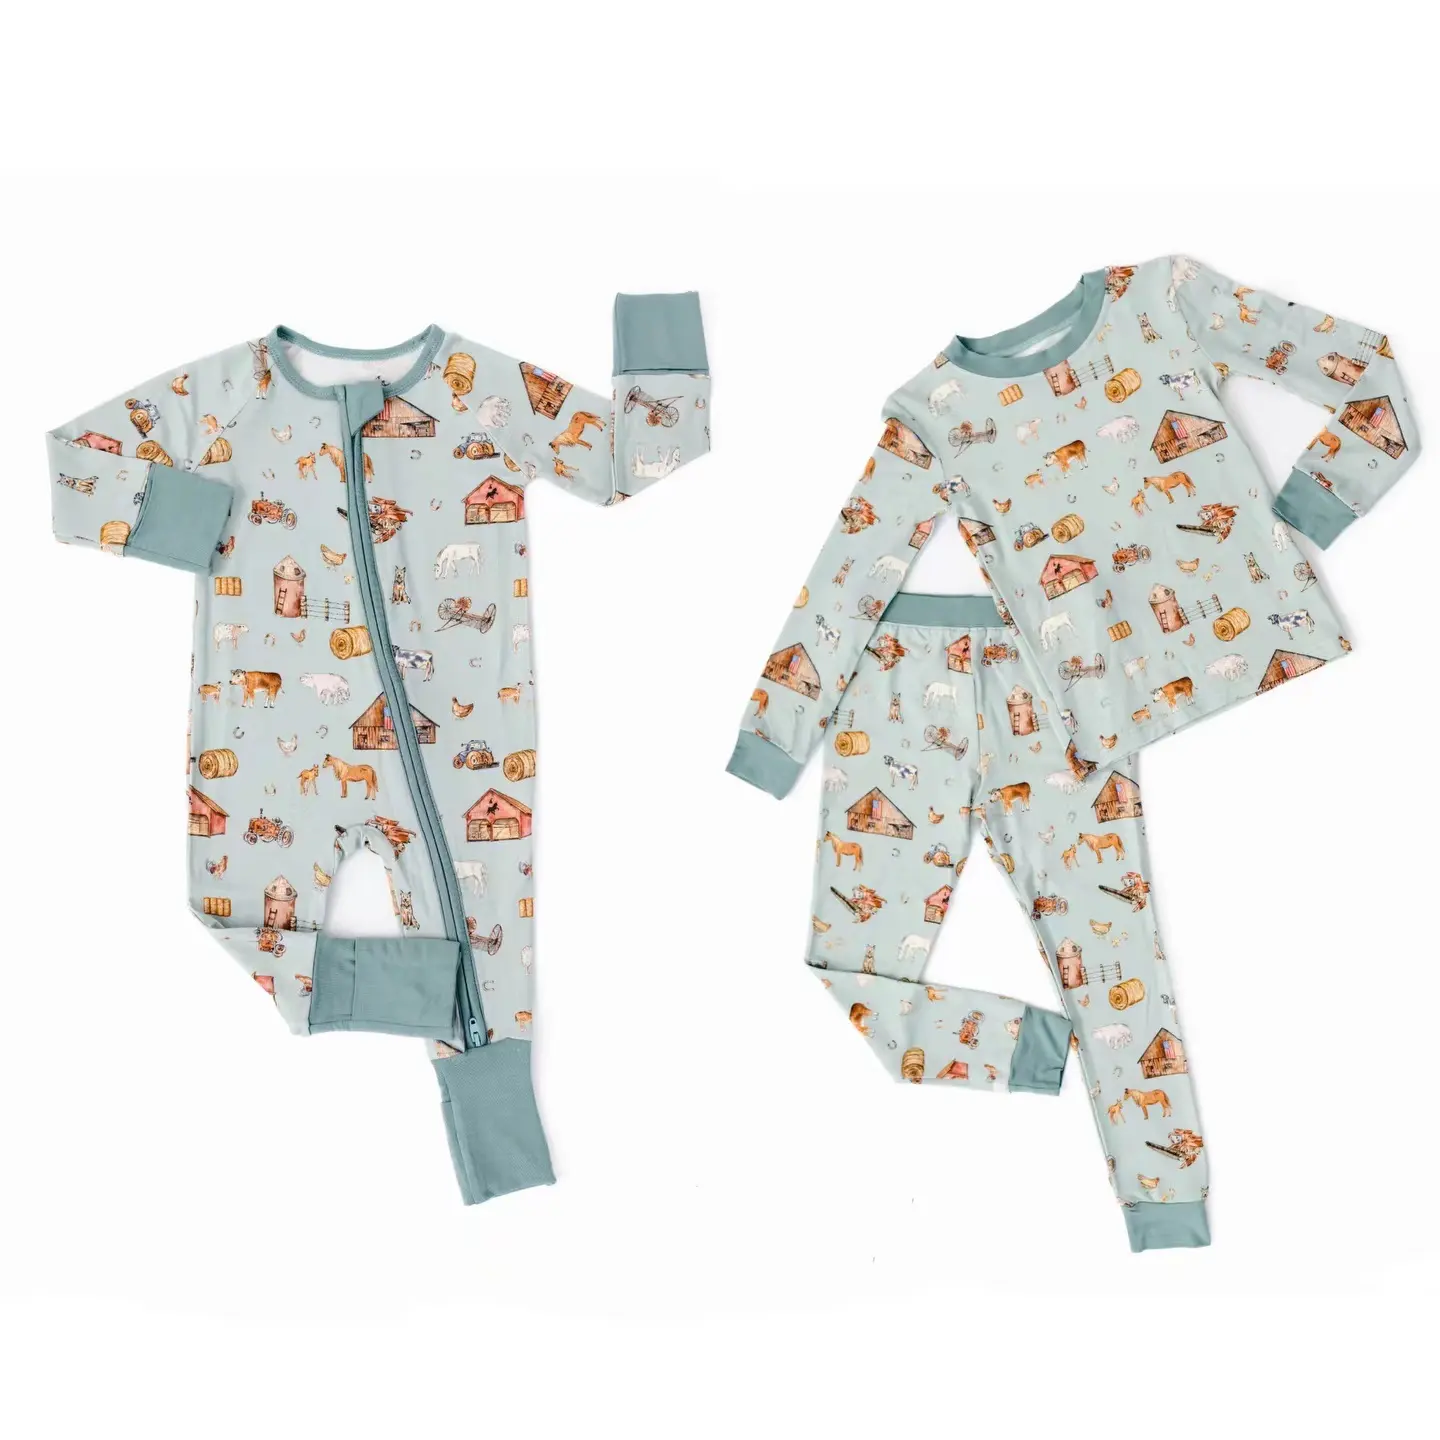 Wholesale Custom Print Best Seller Bamboo fiber Zip Baby Sleepsuit Soft Breathable Footie Romper Cartoon Printed Baby Rompers